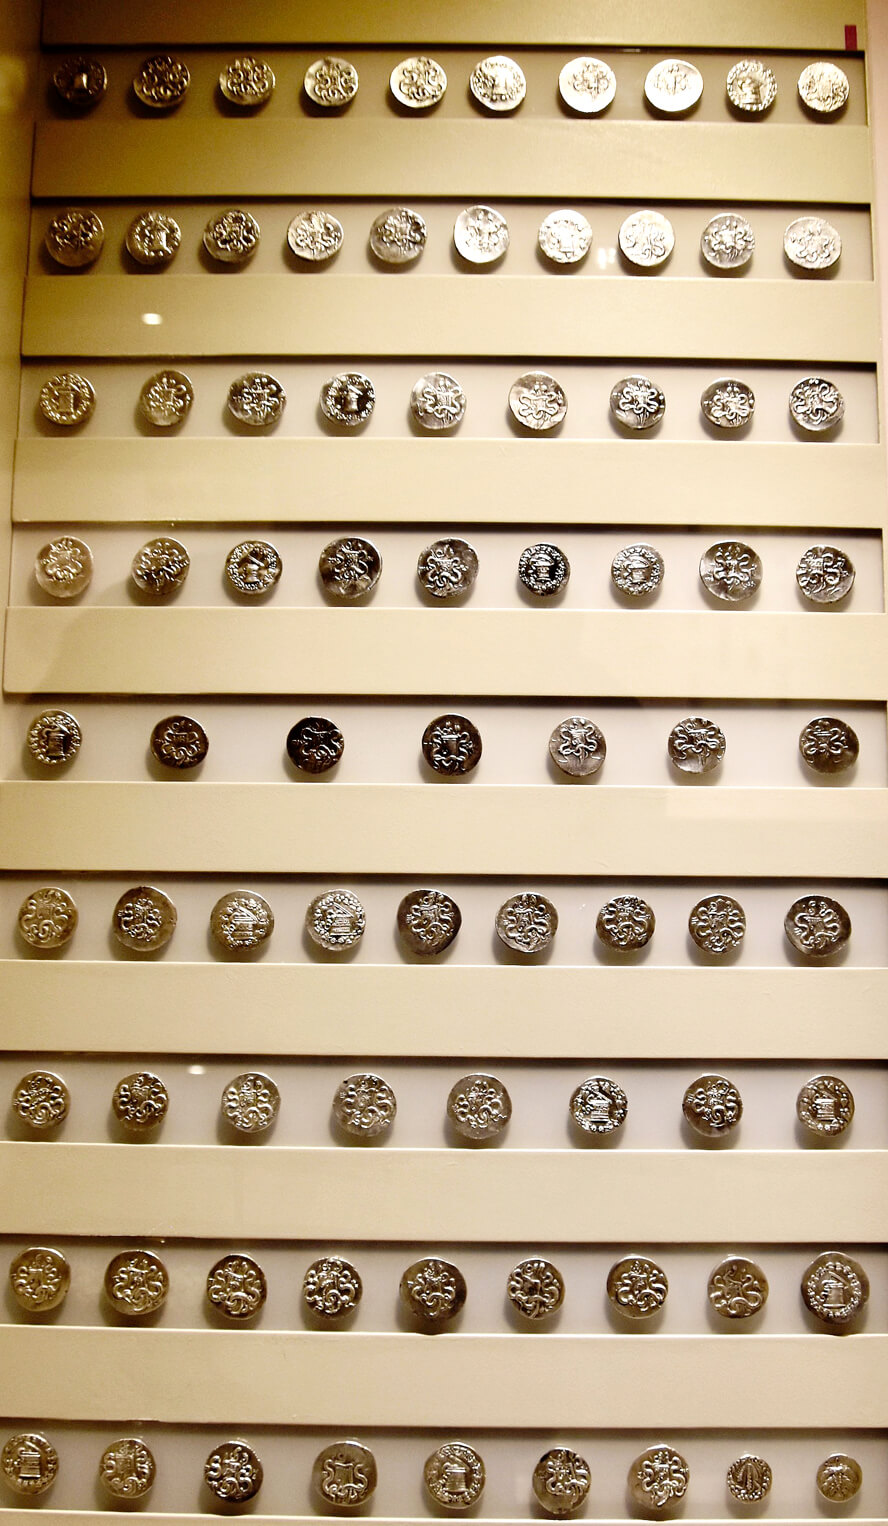 Ephesian Coins. The Ephesus Museum, Selcuk, Turkey.